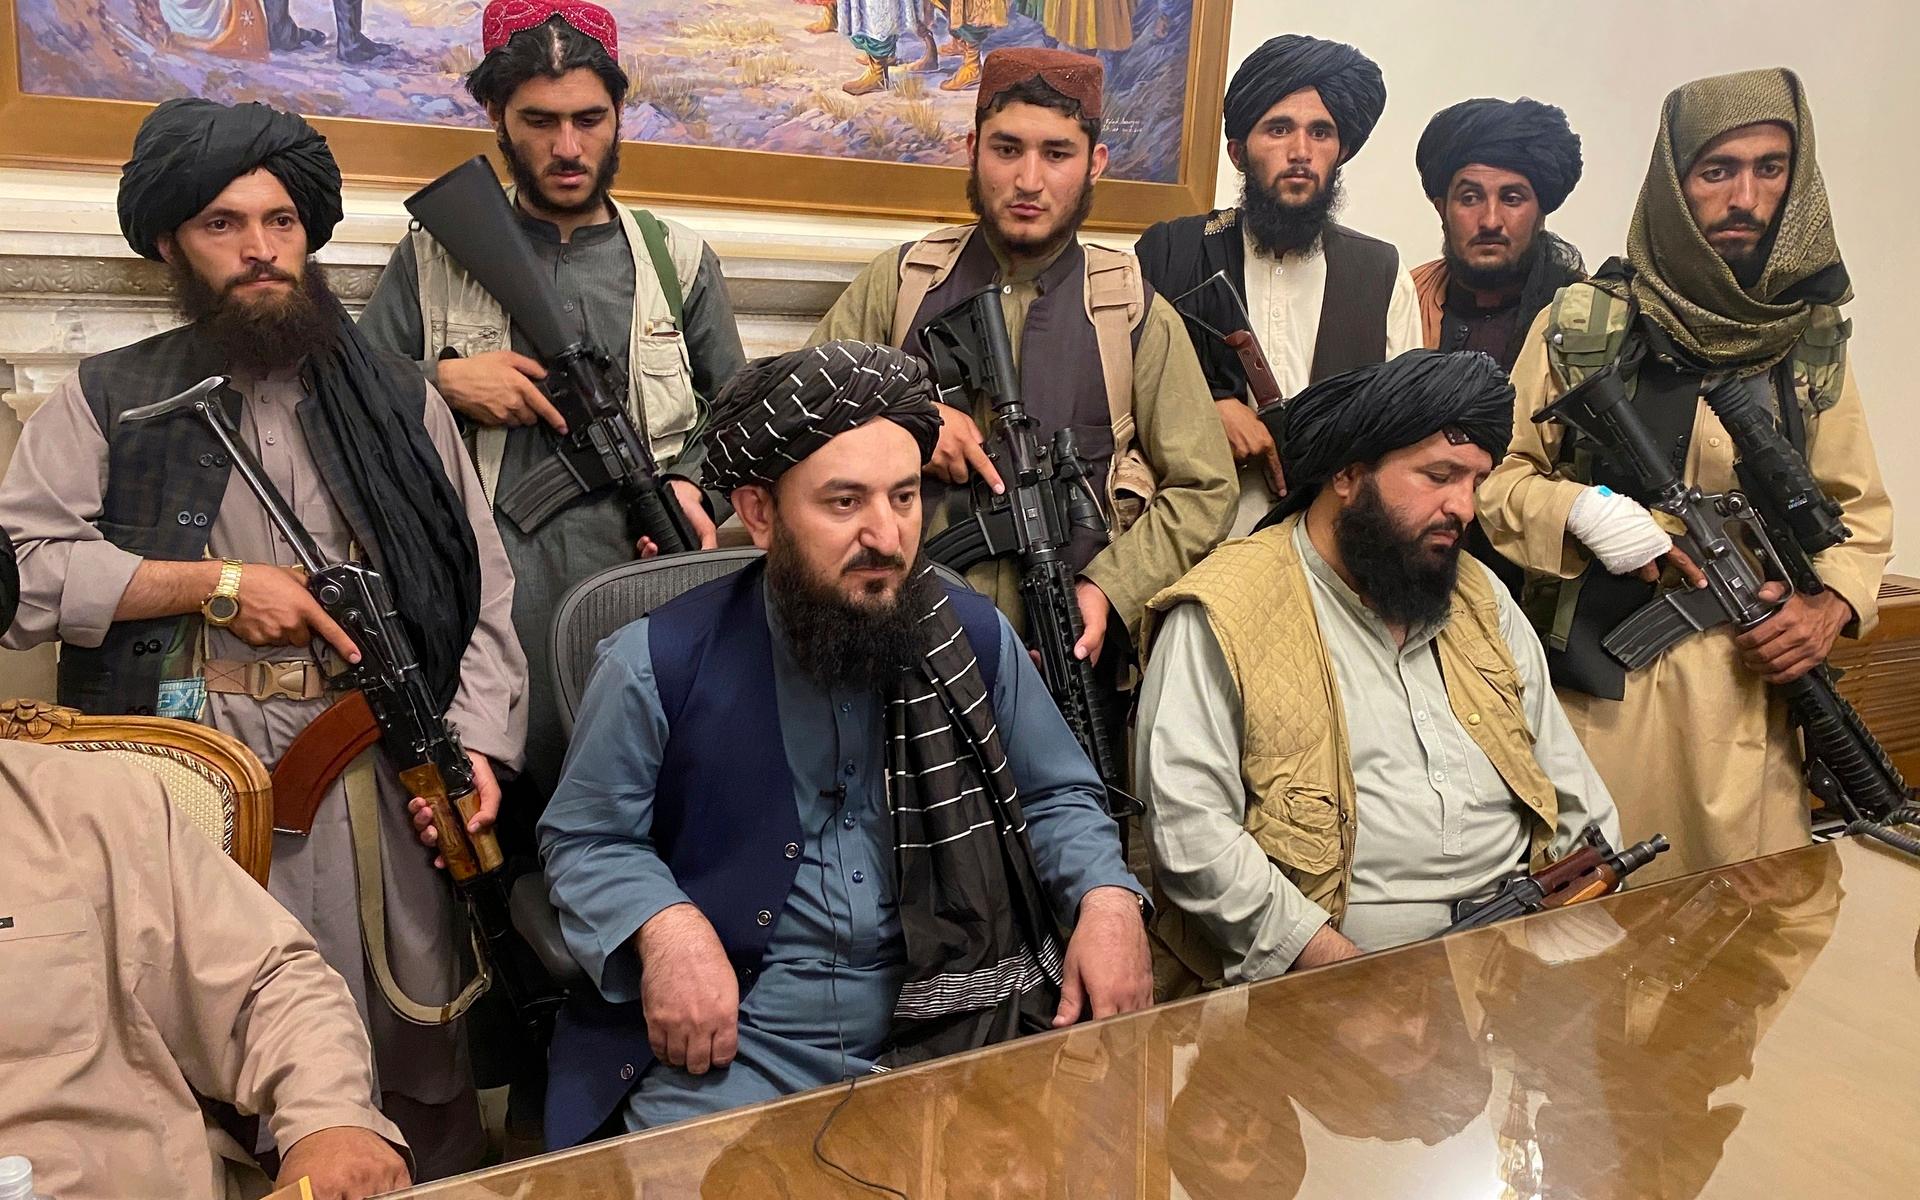 Talibanerna intog under kvällen presidentpalatset.